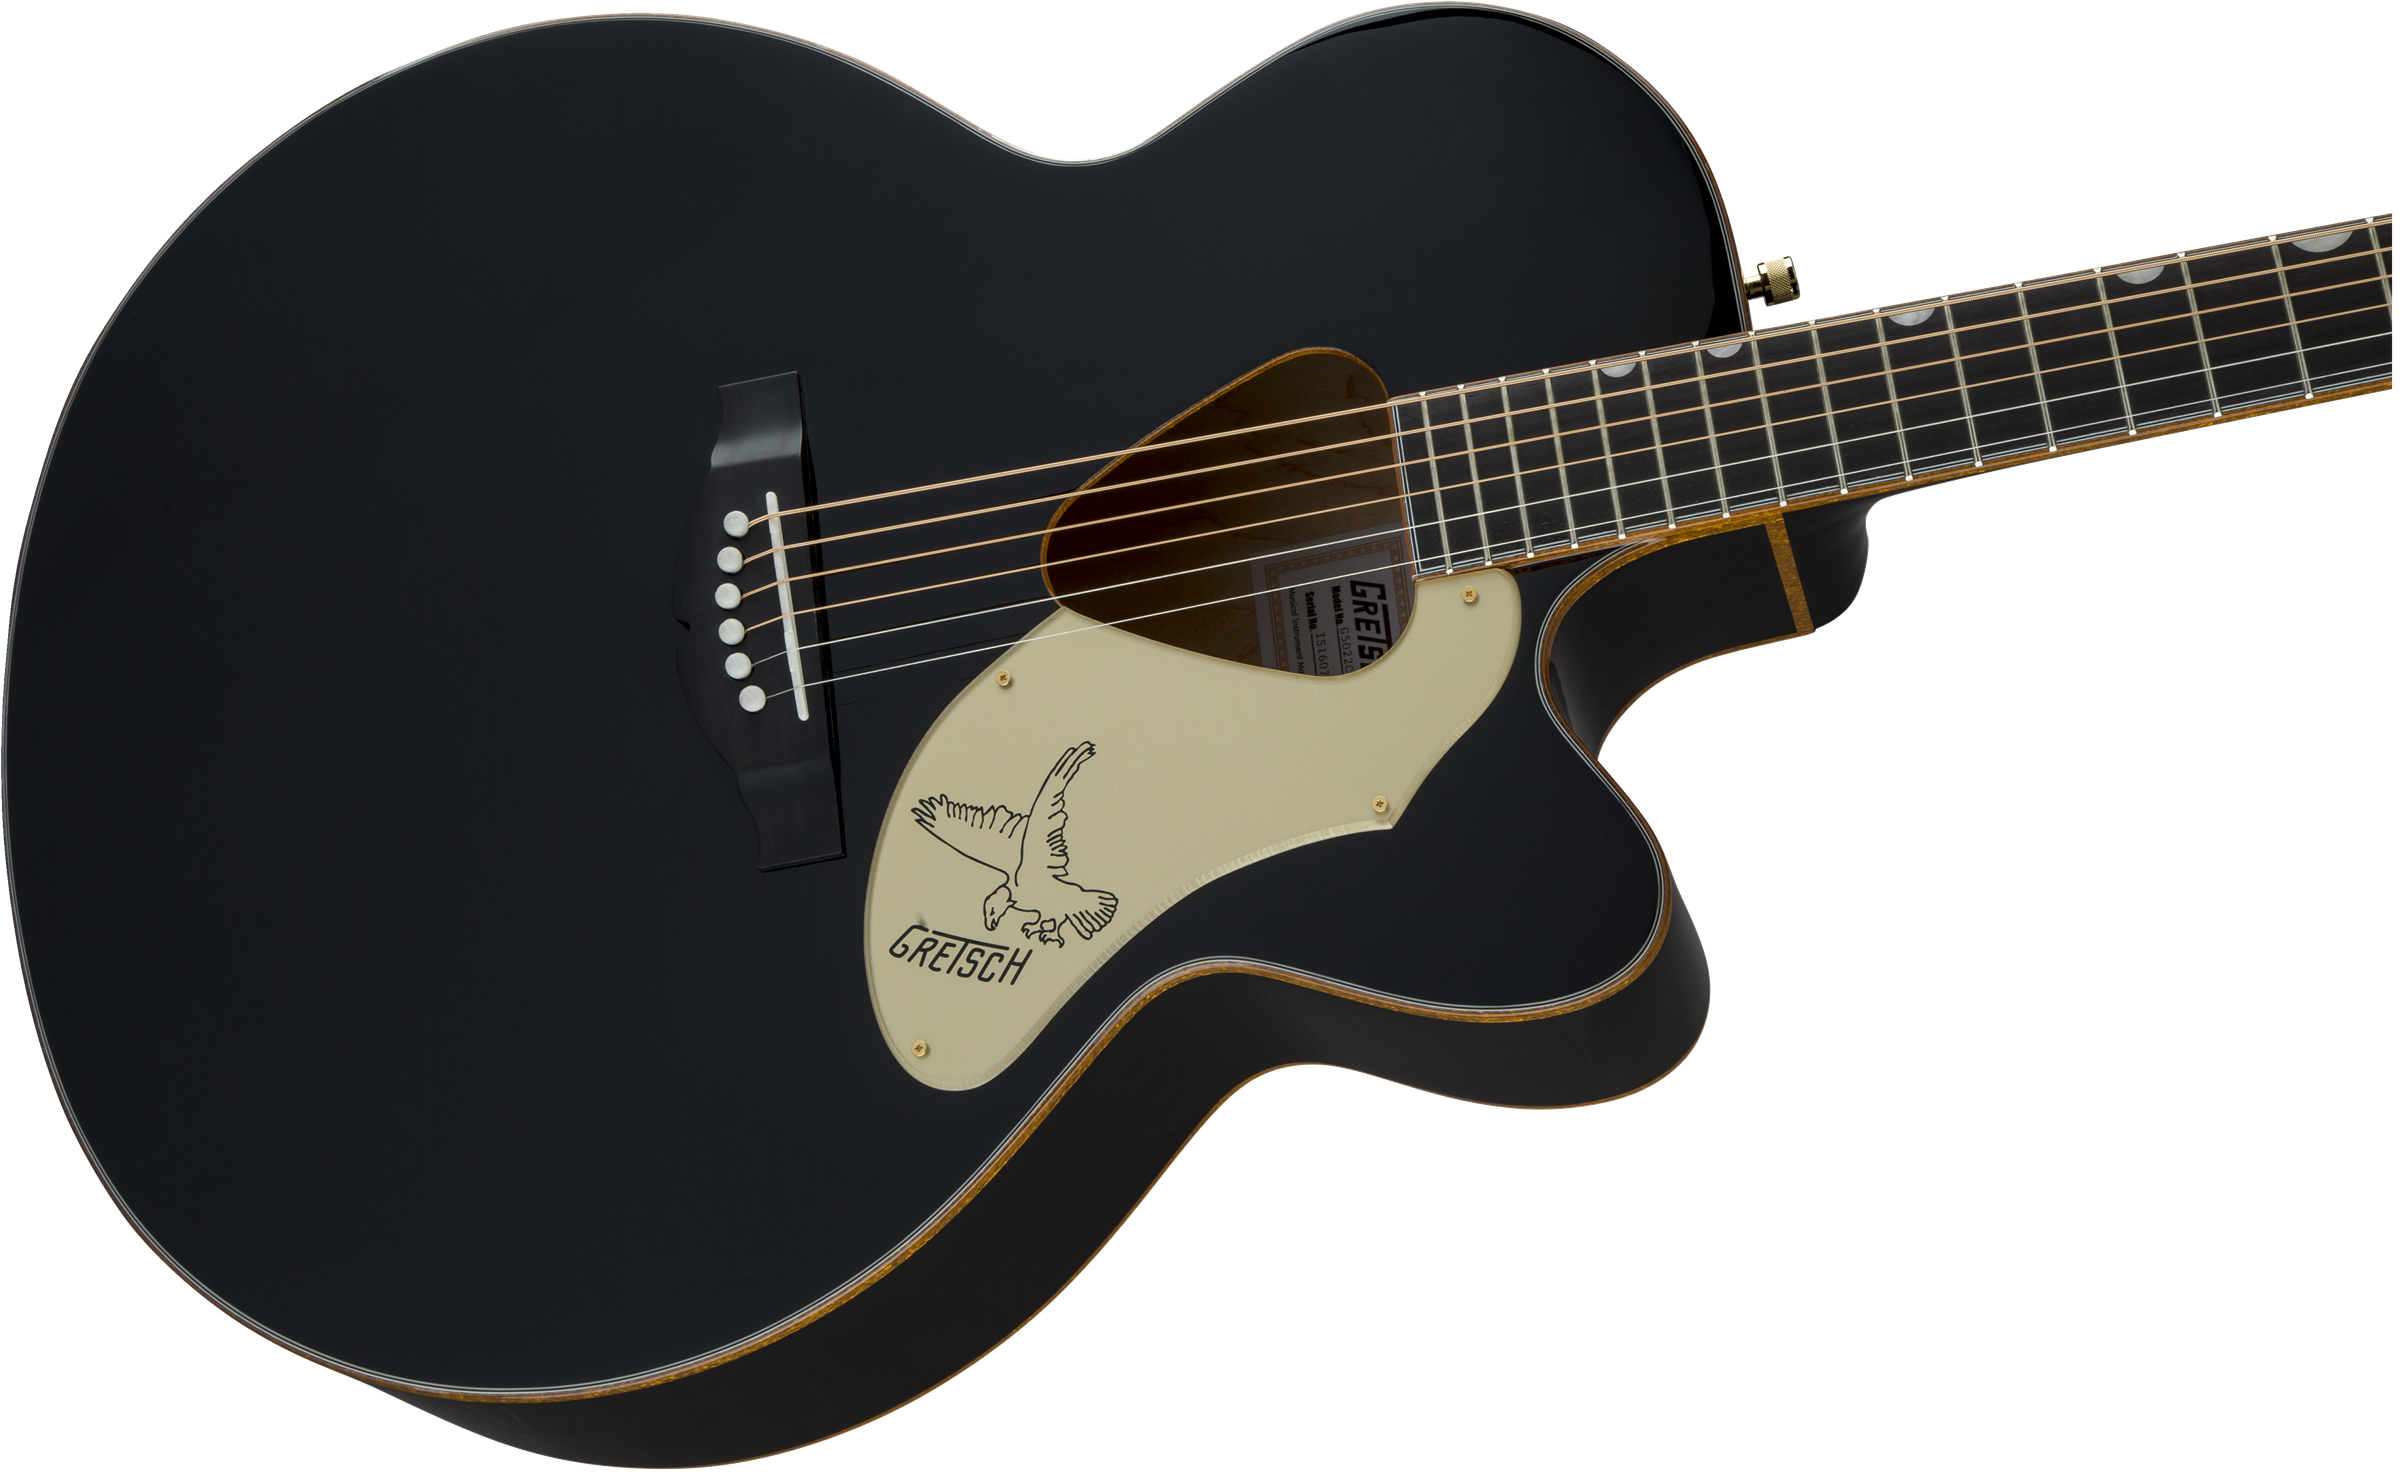 Gretsch G5022cbfe Rancher Falcon Jumbo Cw Epicea Erable Rw - Black - Guitarra electro acustica - Variation 3